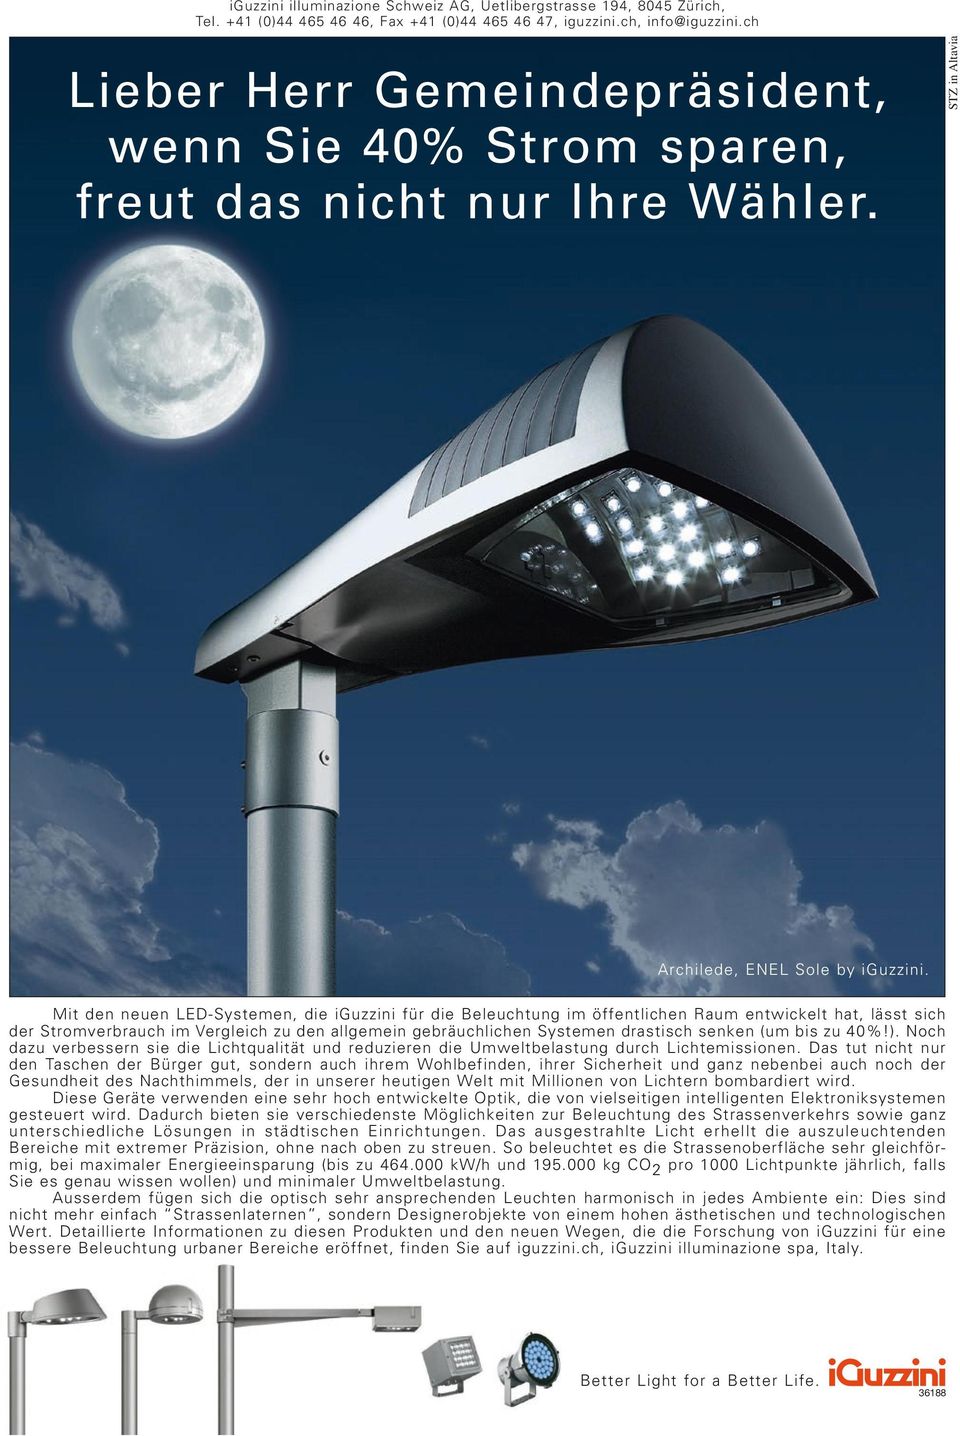 Mit den neuen LED-Systemen, die iguzzini für die Beleuchtung im öffentlichen Raum entwickelt hat, lässt sich der Stromverbrauch im Vergleich zu den allgemein gebräuchlichen Systemen drastisch senken